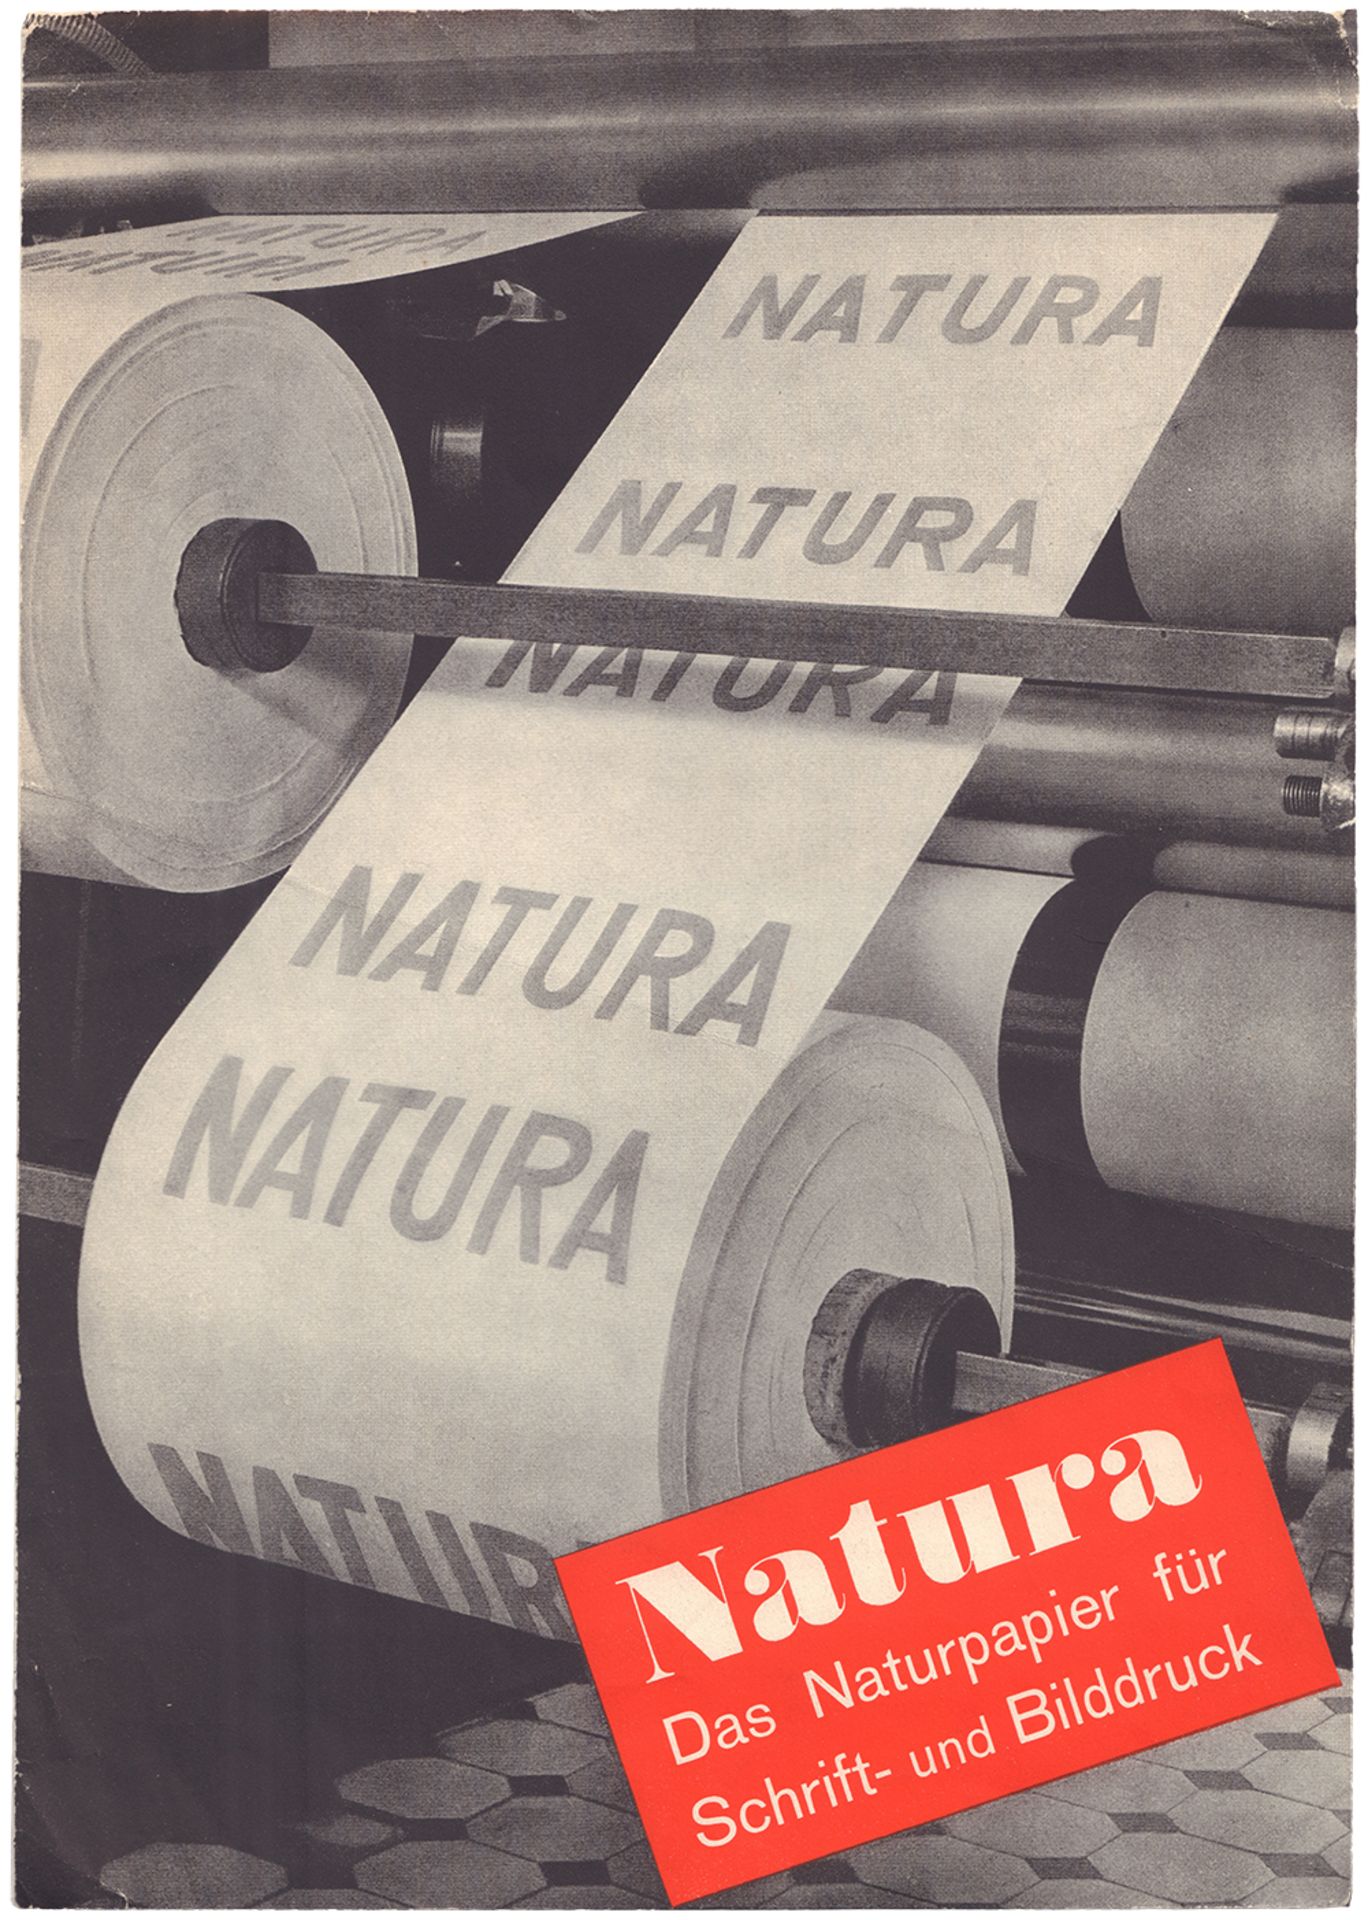 Natura. Das Naturpapier f?r Schrift- und Bilddruck. [Germany, 1920s].